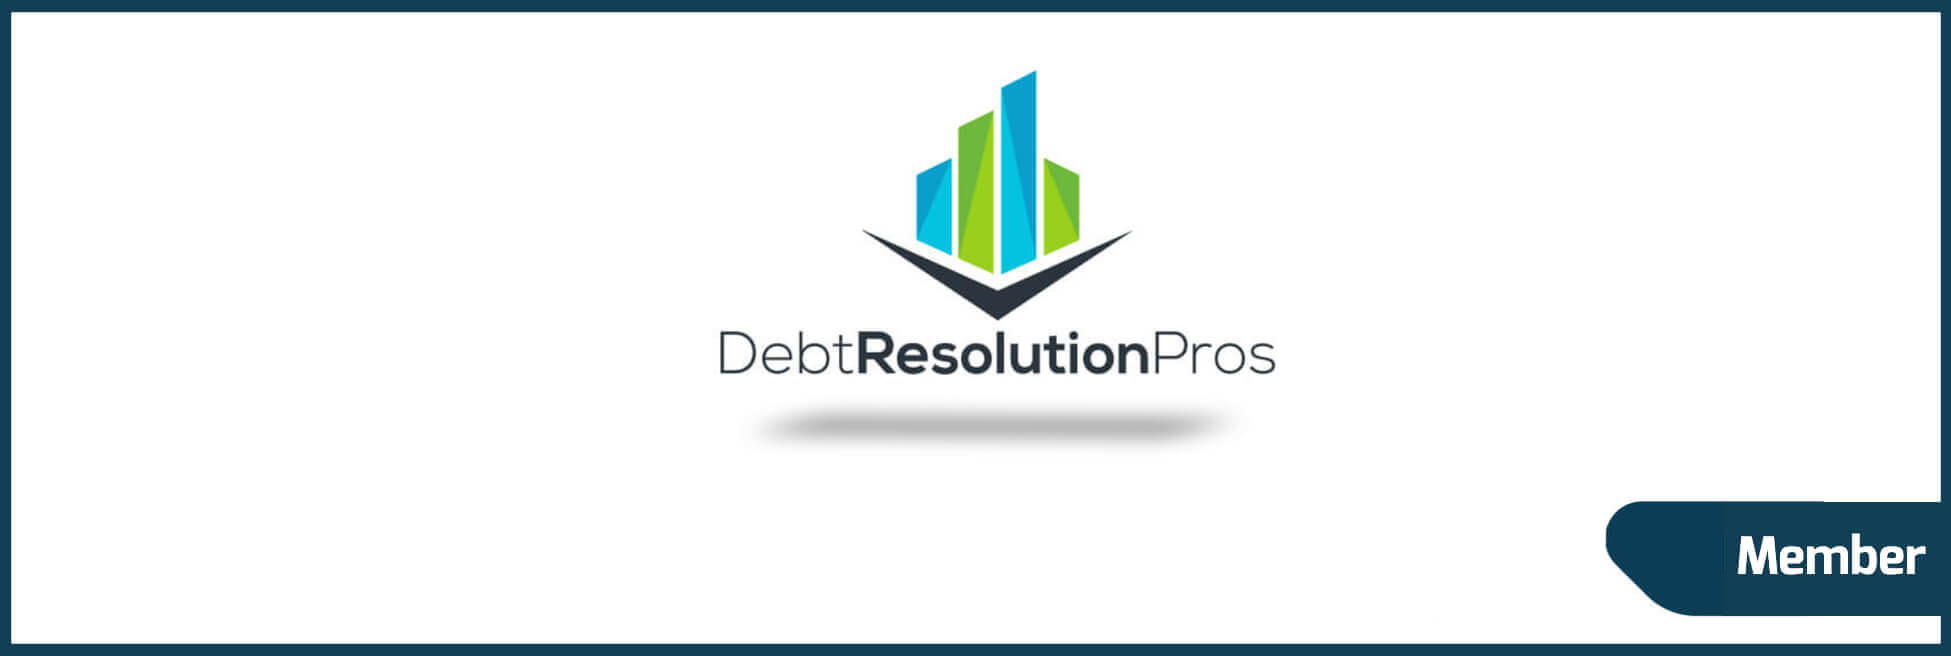 Debt Resolution Pros